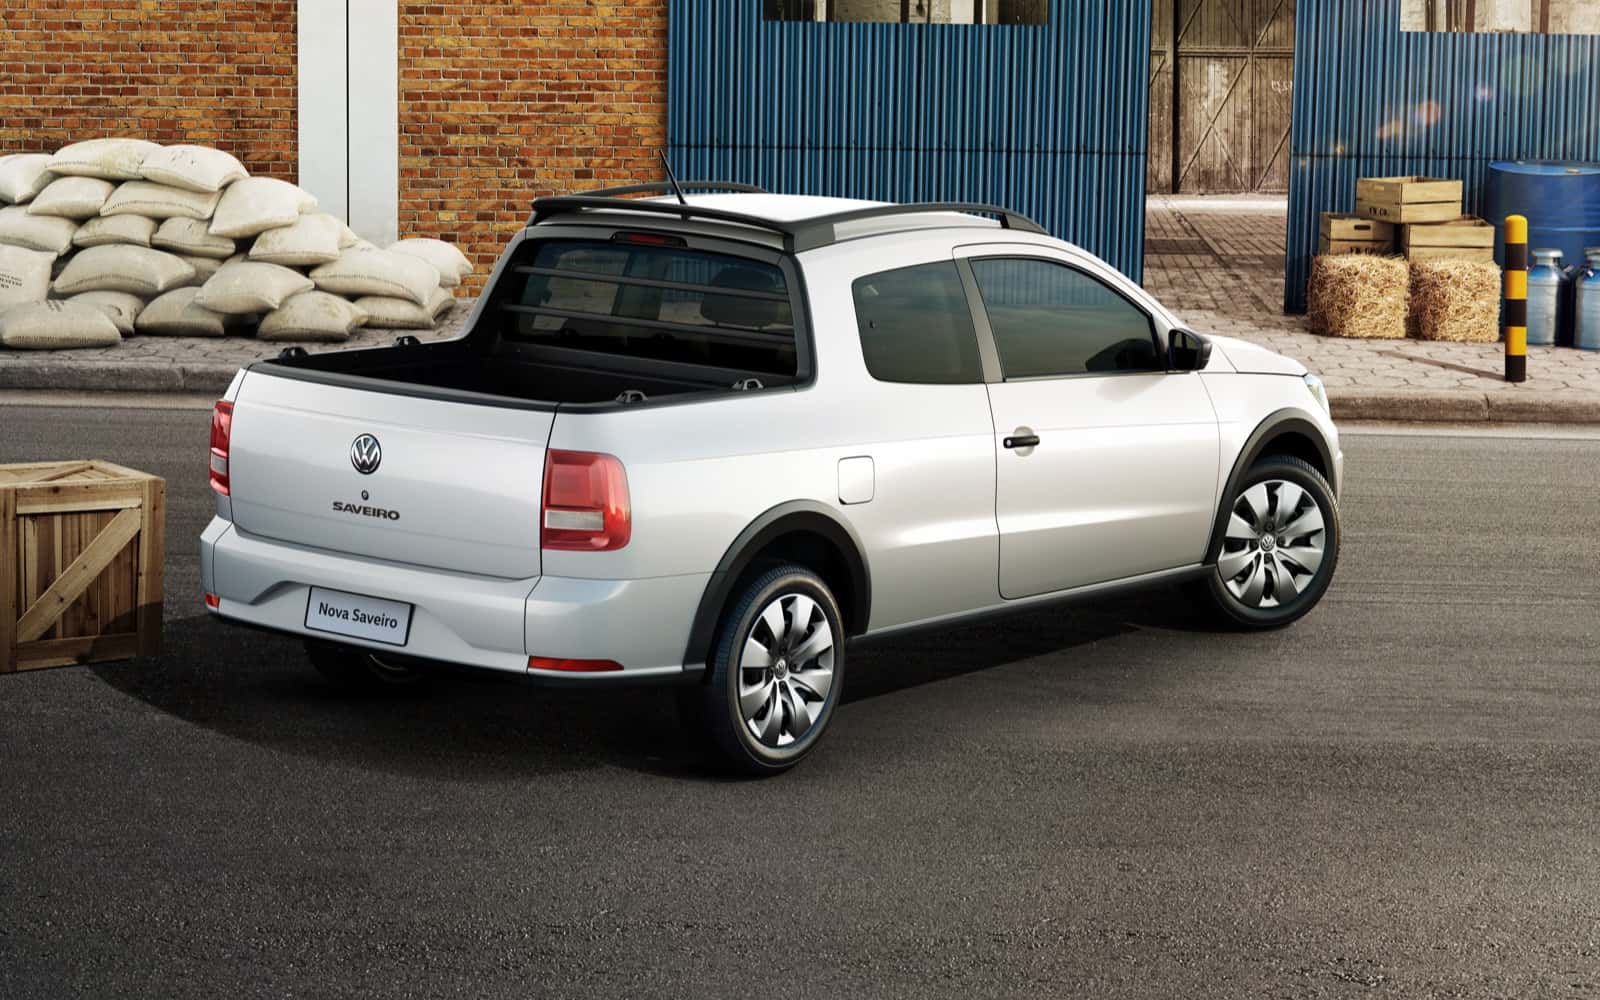 VW começa a exportar Saveiro para o Peru - Prisma - R7 Autos Carros